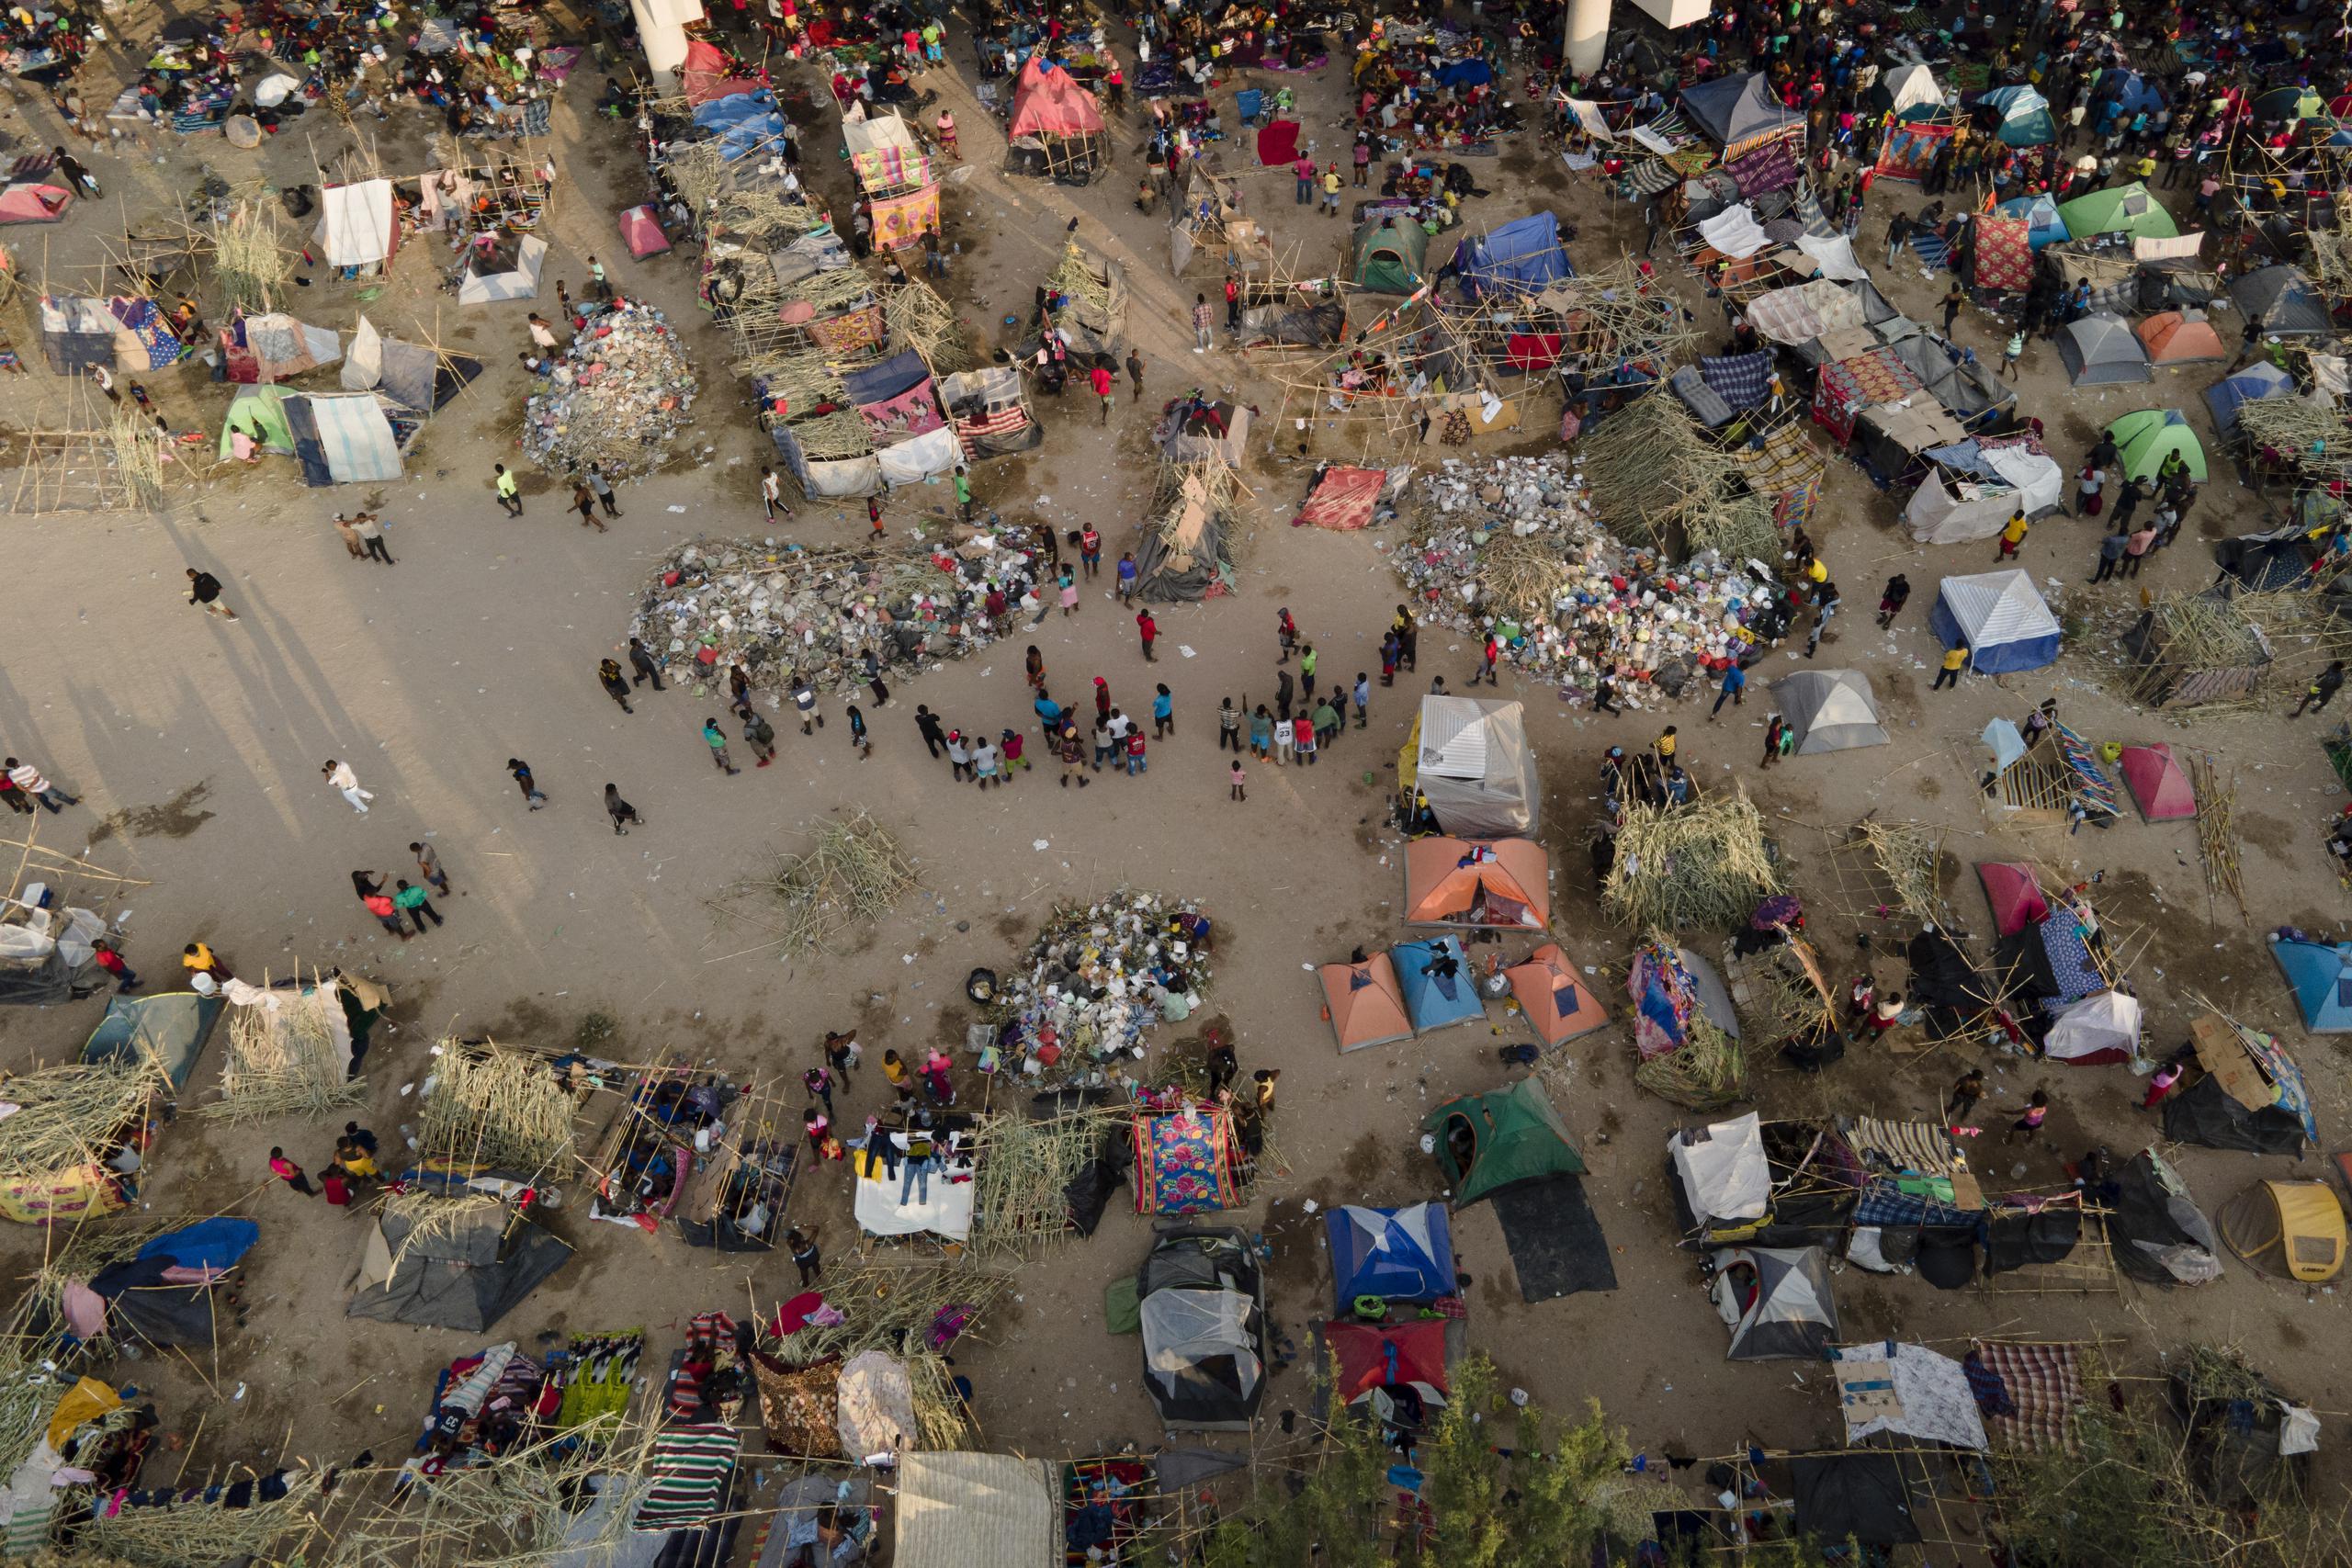 Migrantes, muchos de ellos procedentes de Haití, vistos en un campamento junto al Del Rio International Bridge, cerca del Río Bravo, el 21 de septiembre de 2021, en Del Rio, Texas. (AP Foto/Julio Cortez)